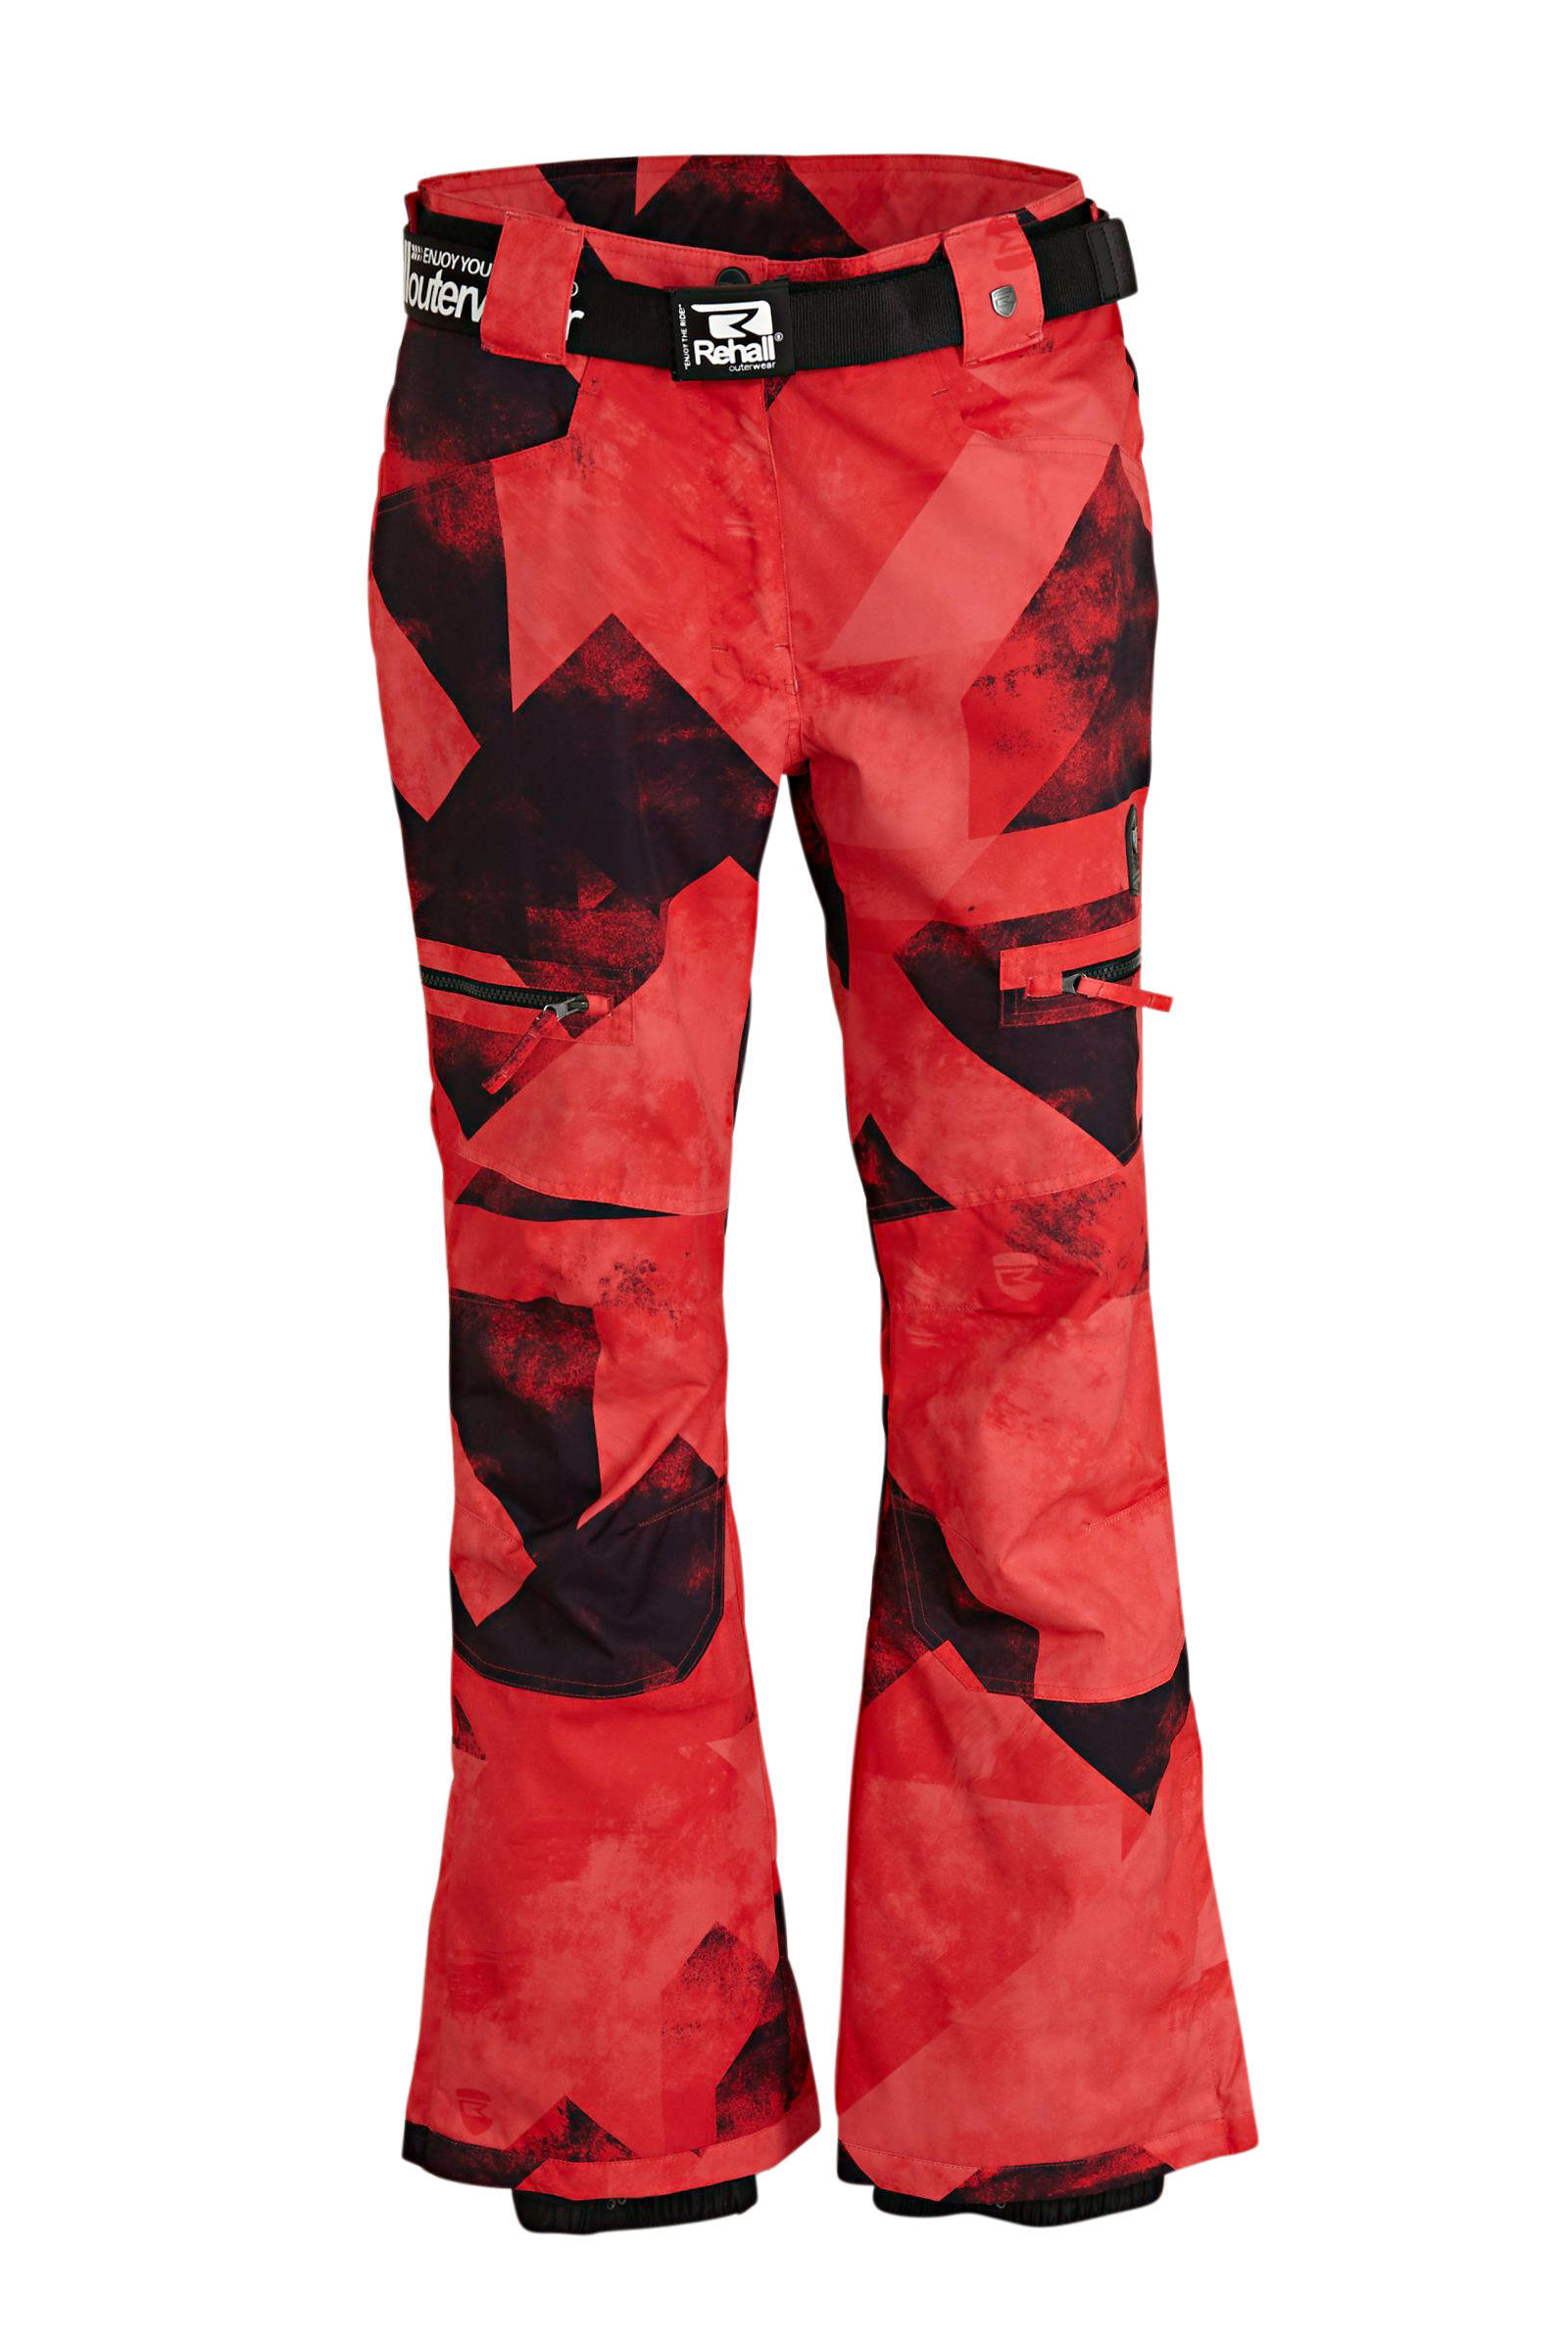 Rehall skibroek Keely R rood/zwart online kopen